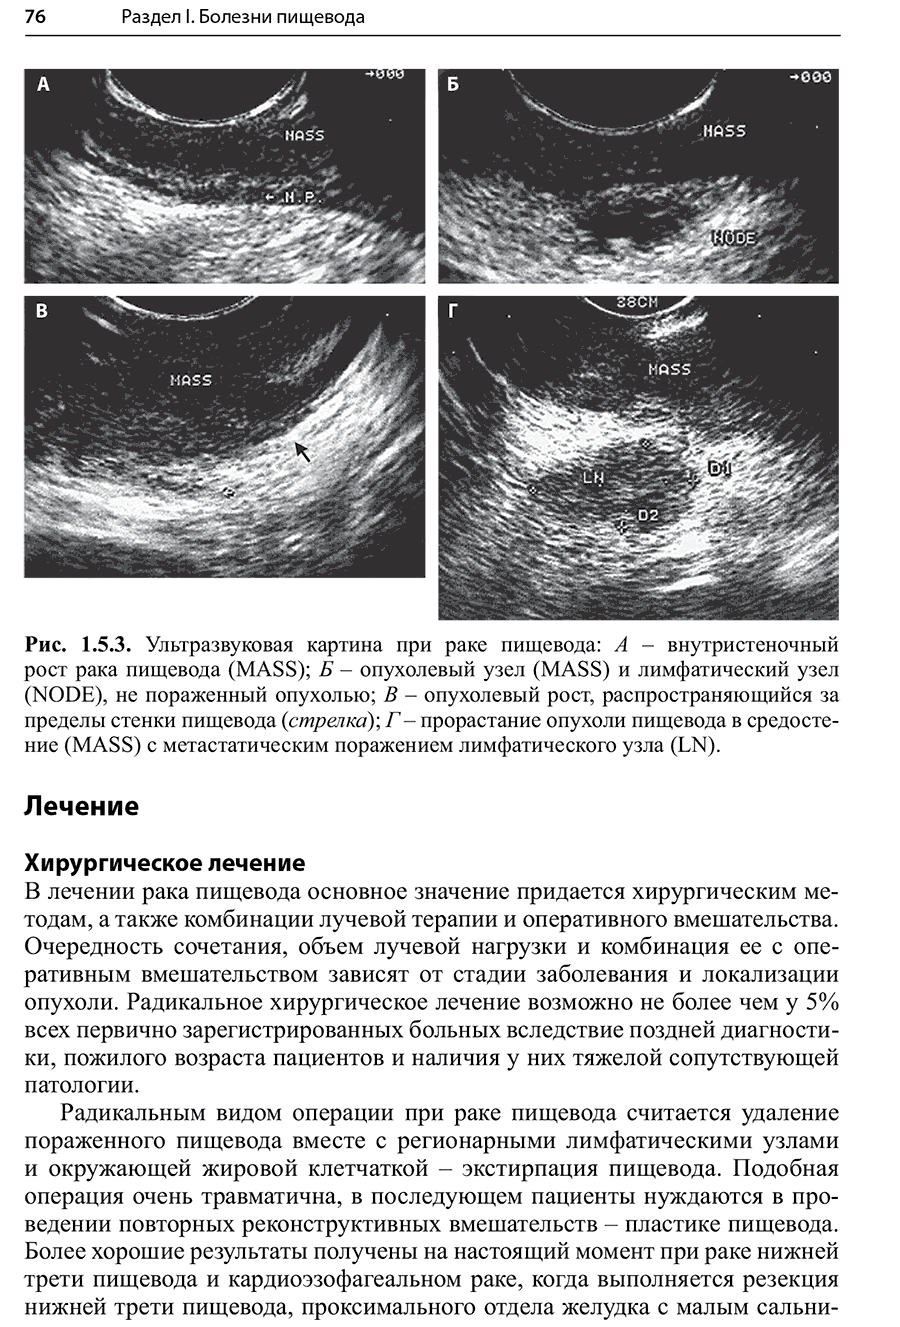 Пример страницы из книги "Гастроэнтерология и гепатология: диагностика и лечение"